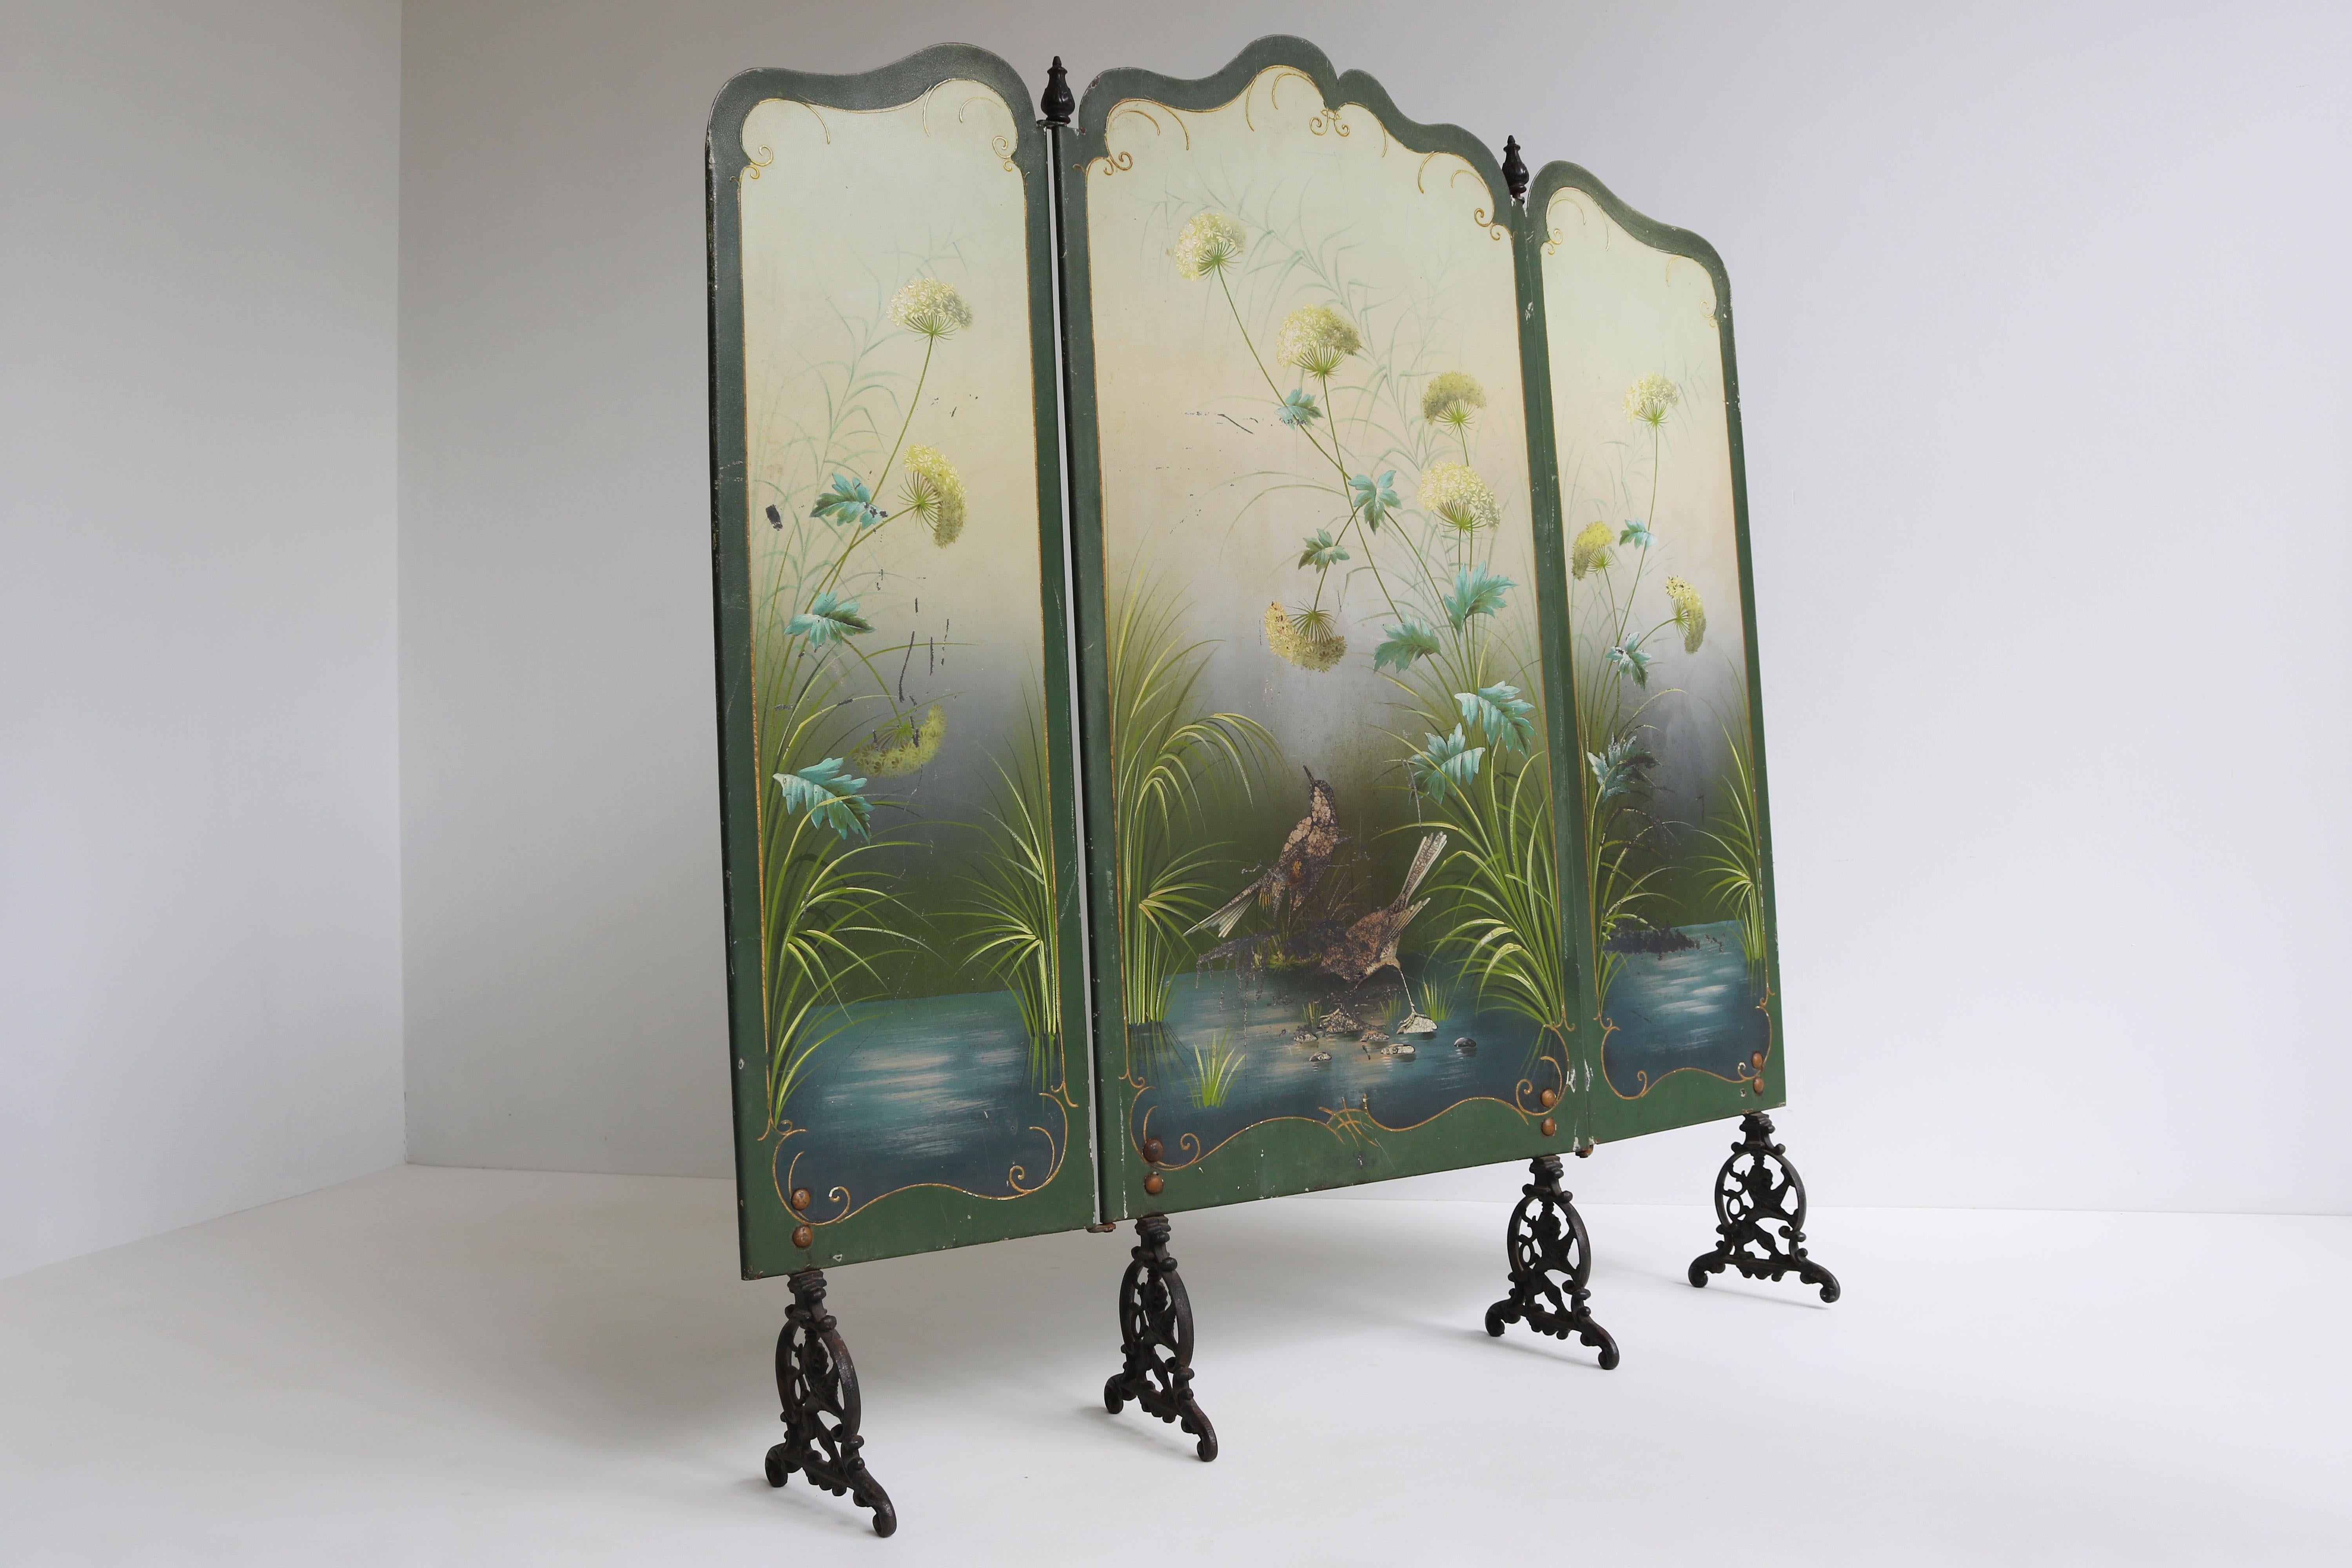 Dekorativ und atemberaubend! Dieser handbemalte Jugendstil-Kaminschirm aus Frankreich 1900. Der Bildschirm ist nicht nur ein Bildschirm, sondern auch ein Kunstwerk. Vollständig handbemalt, mit einer Blumenszene und einem Vogelpaar am Wasser. 
Durch